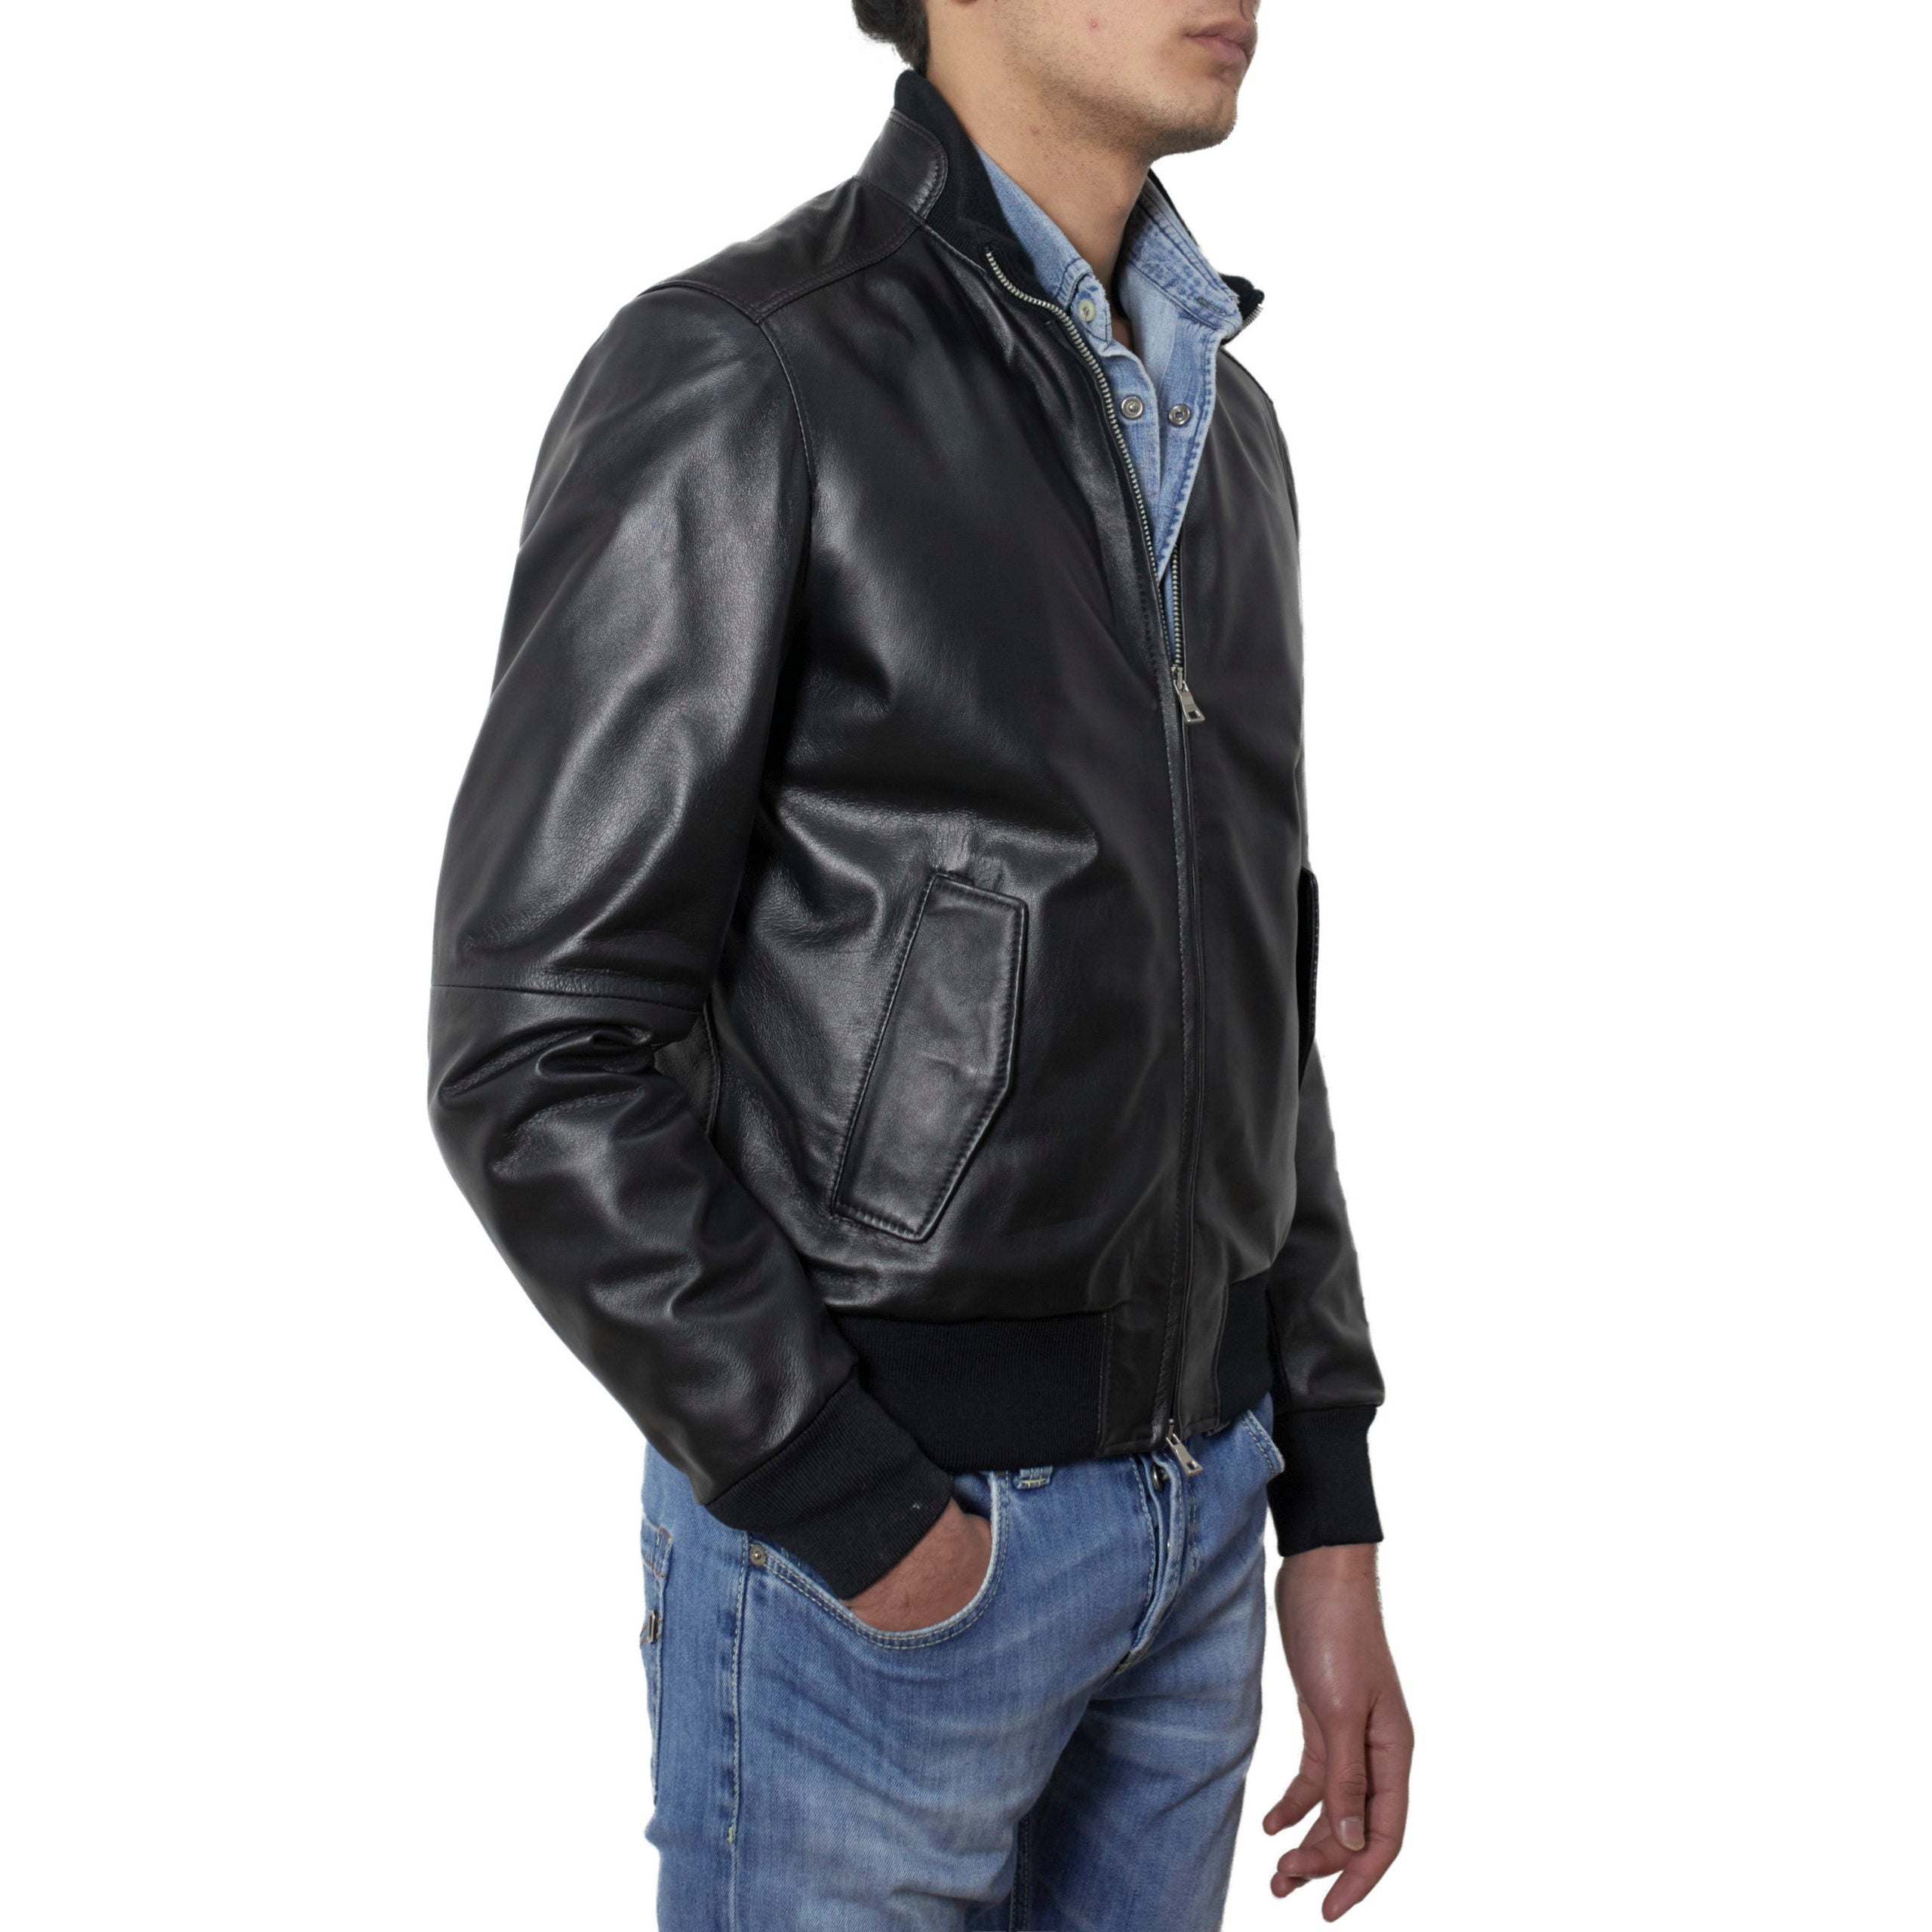 69PNANE leather jacket